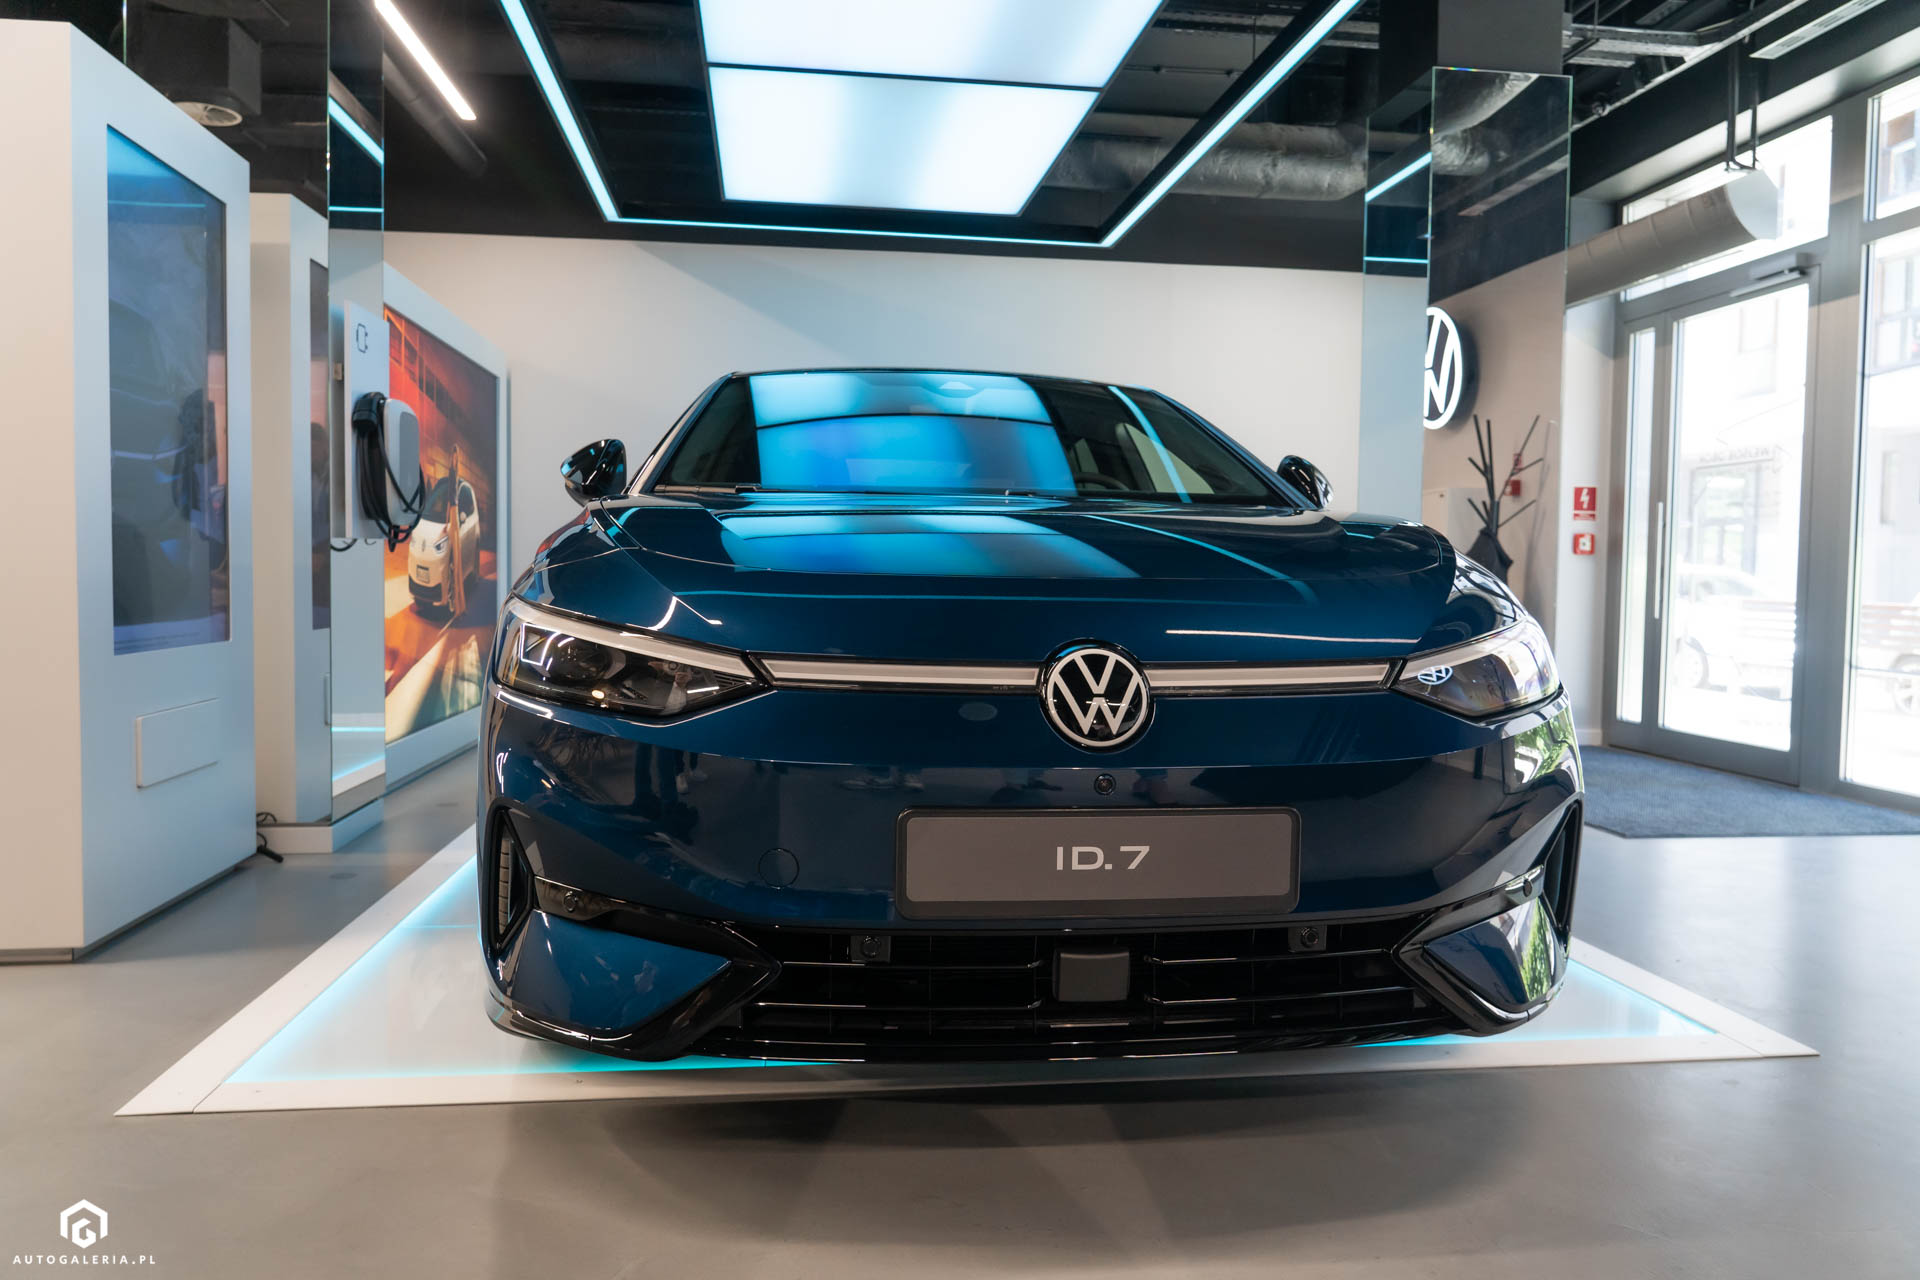 Volkswagen produkcja aut elektrycznych